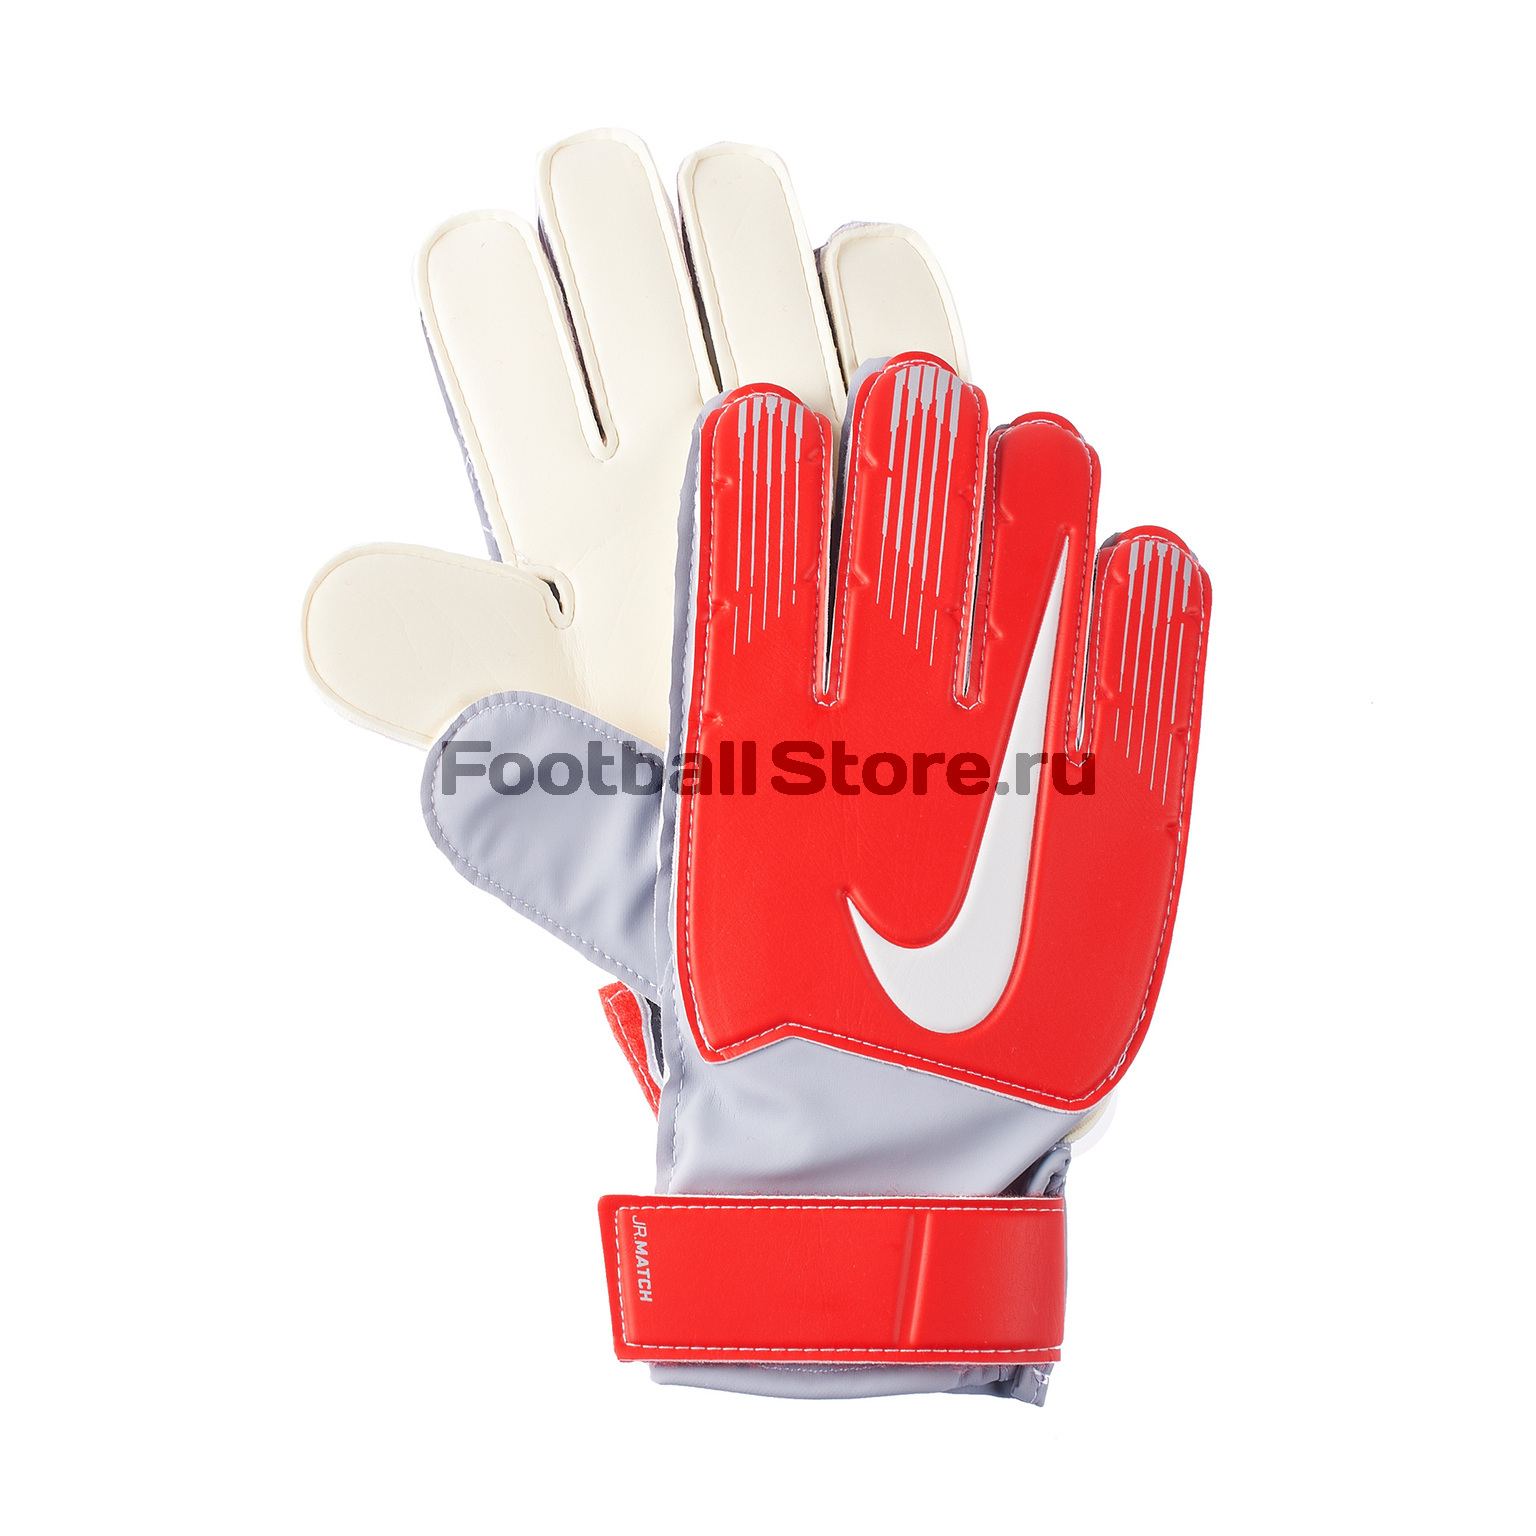 Перчатки Nike Match GS0368-671 – купить в интернет магазине footballstore, цена, фото